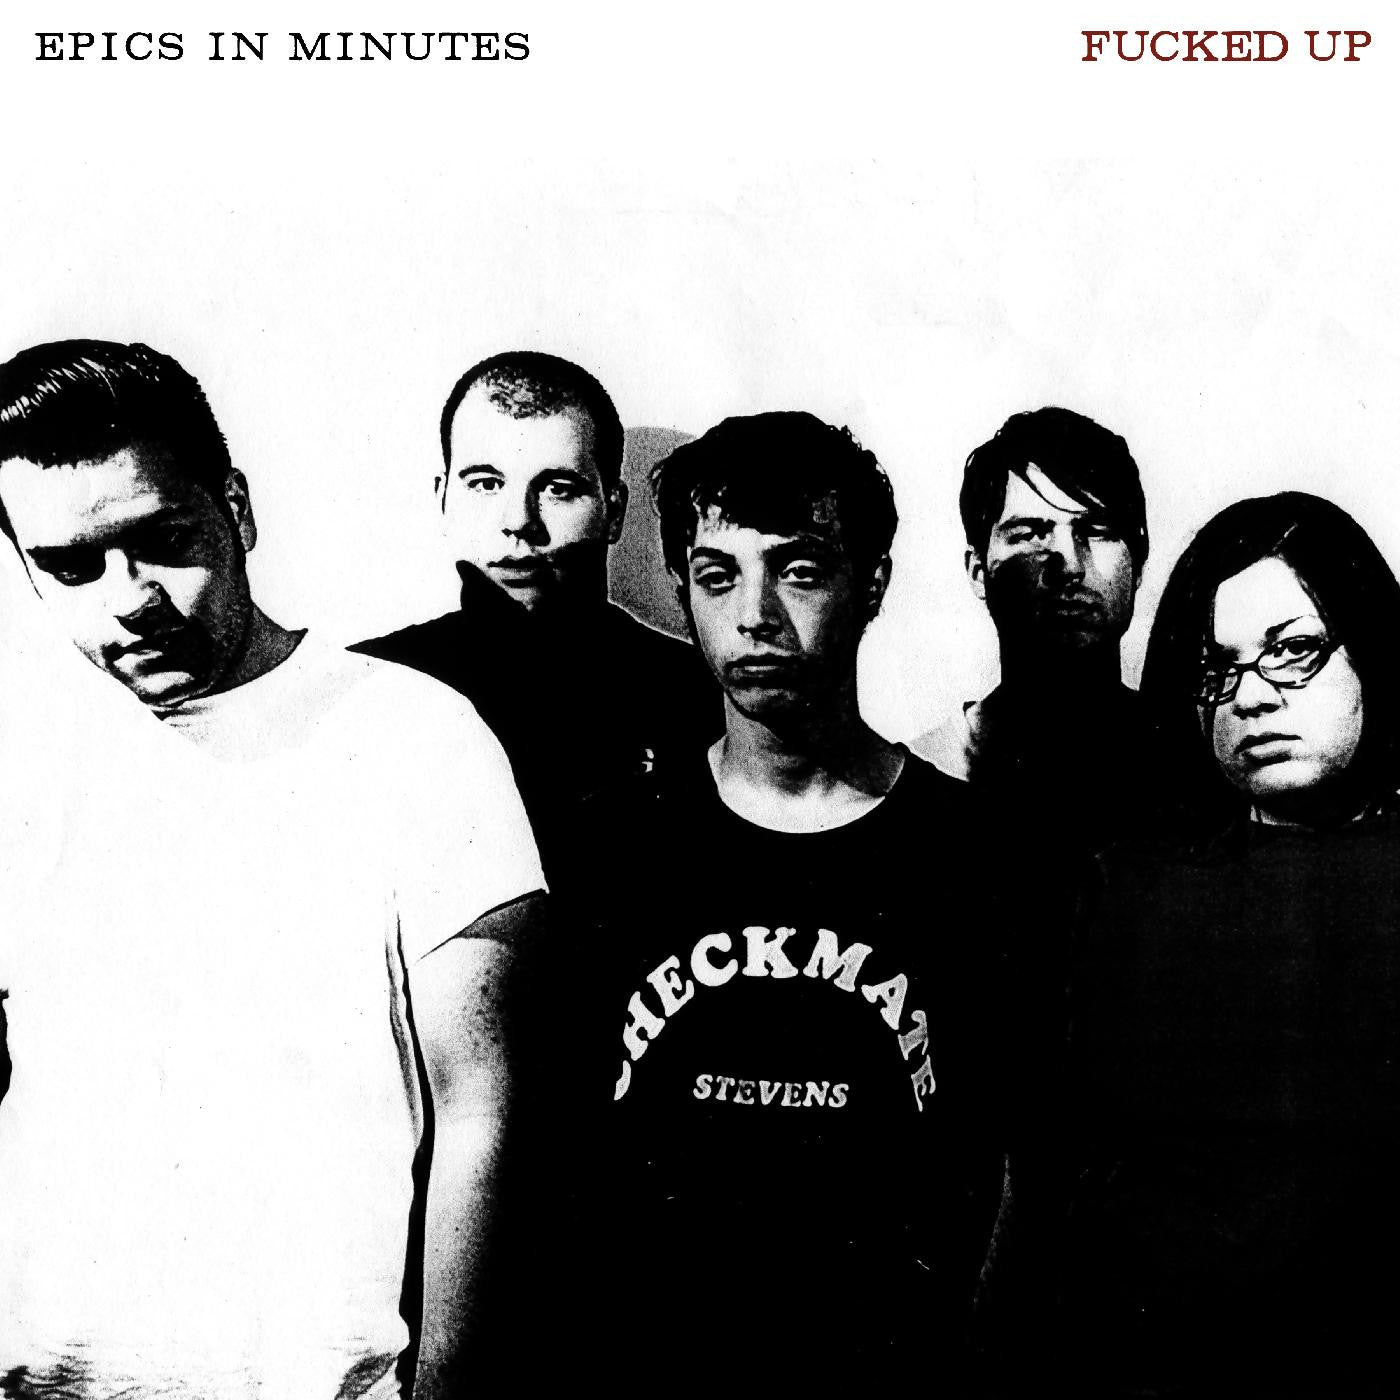 Fucked Up - Epics in Minutes (Vinyl LP)